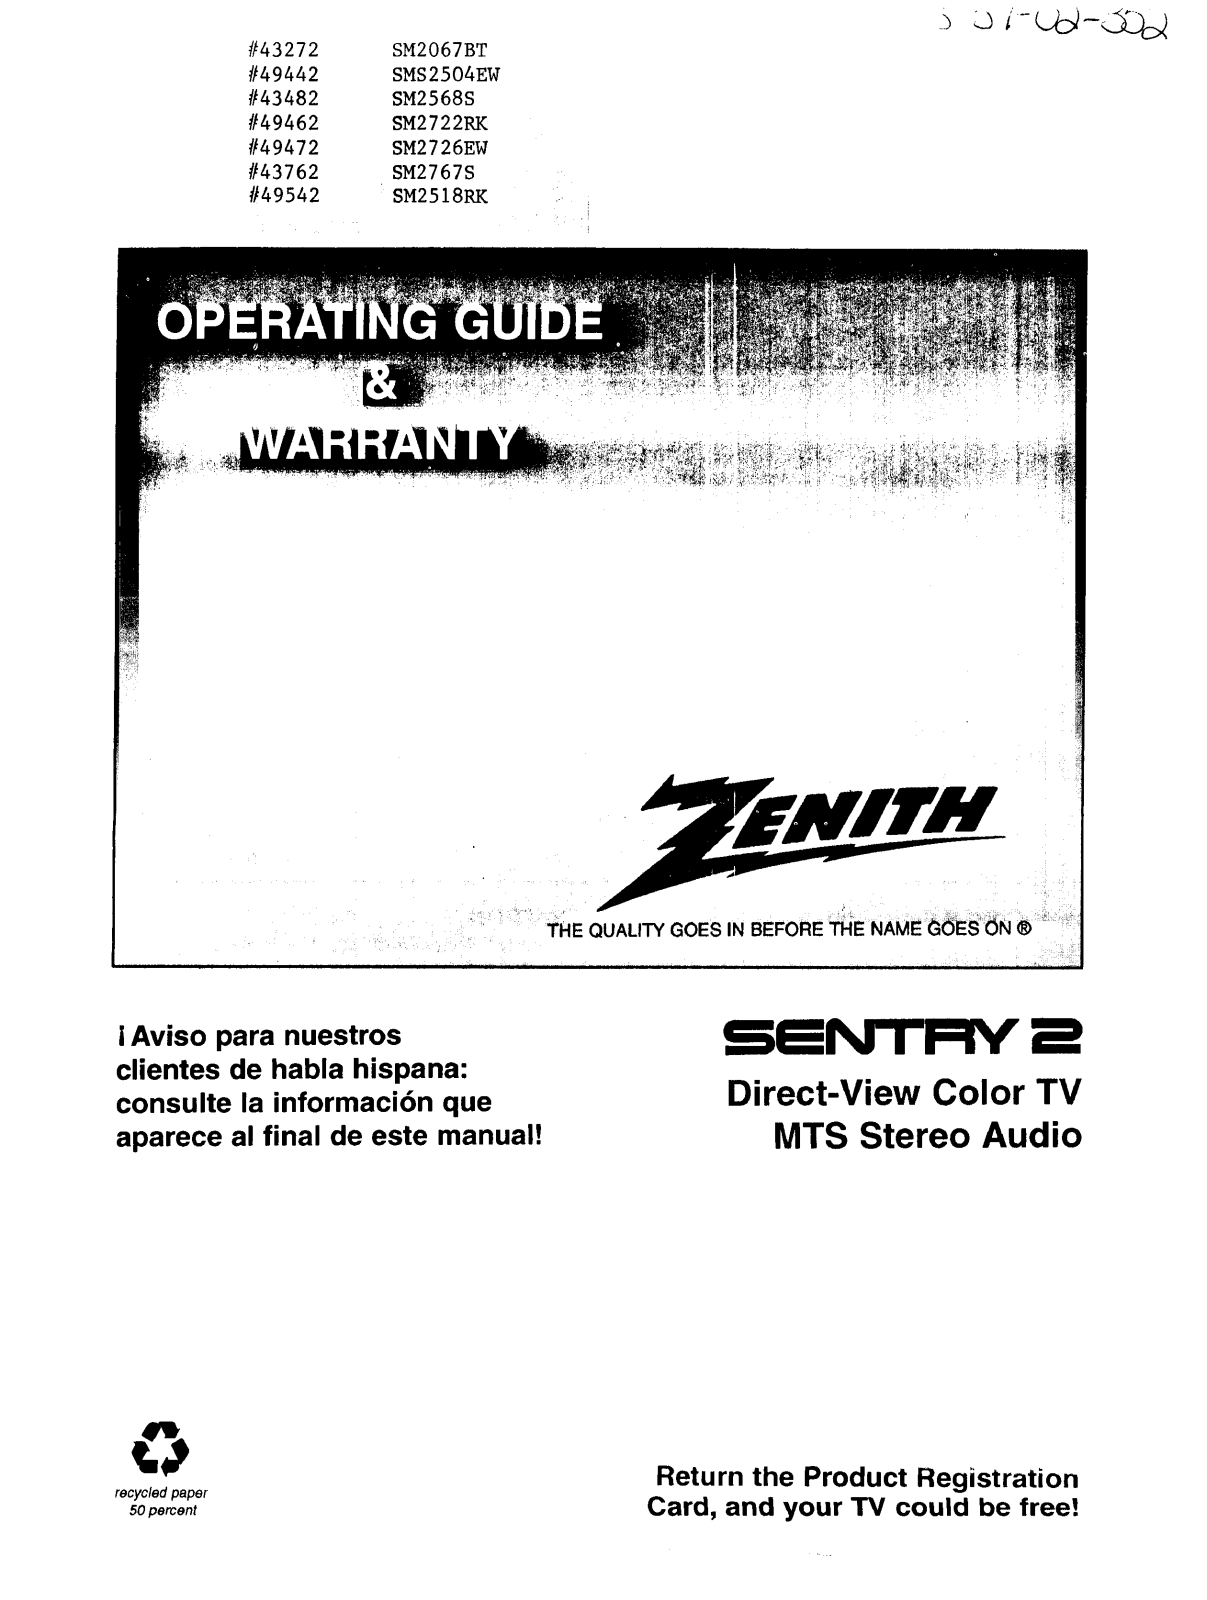 Zenith SMS2504EW, SM2767S, SM2726EW, SM2722RK, SM2568S Owner’s Manual